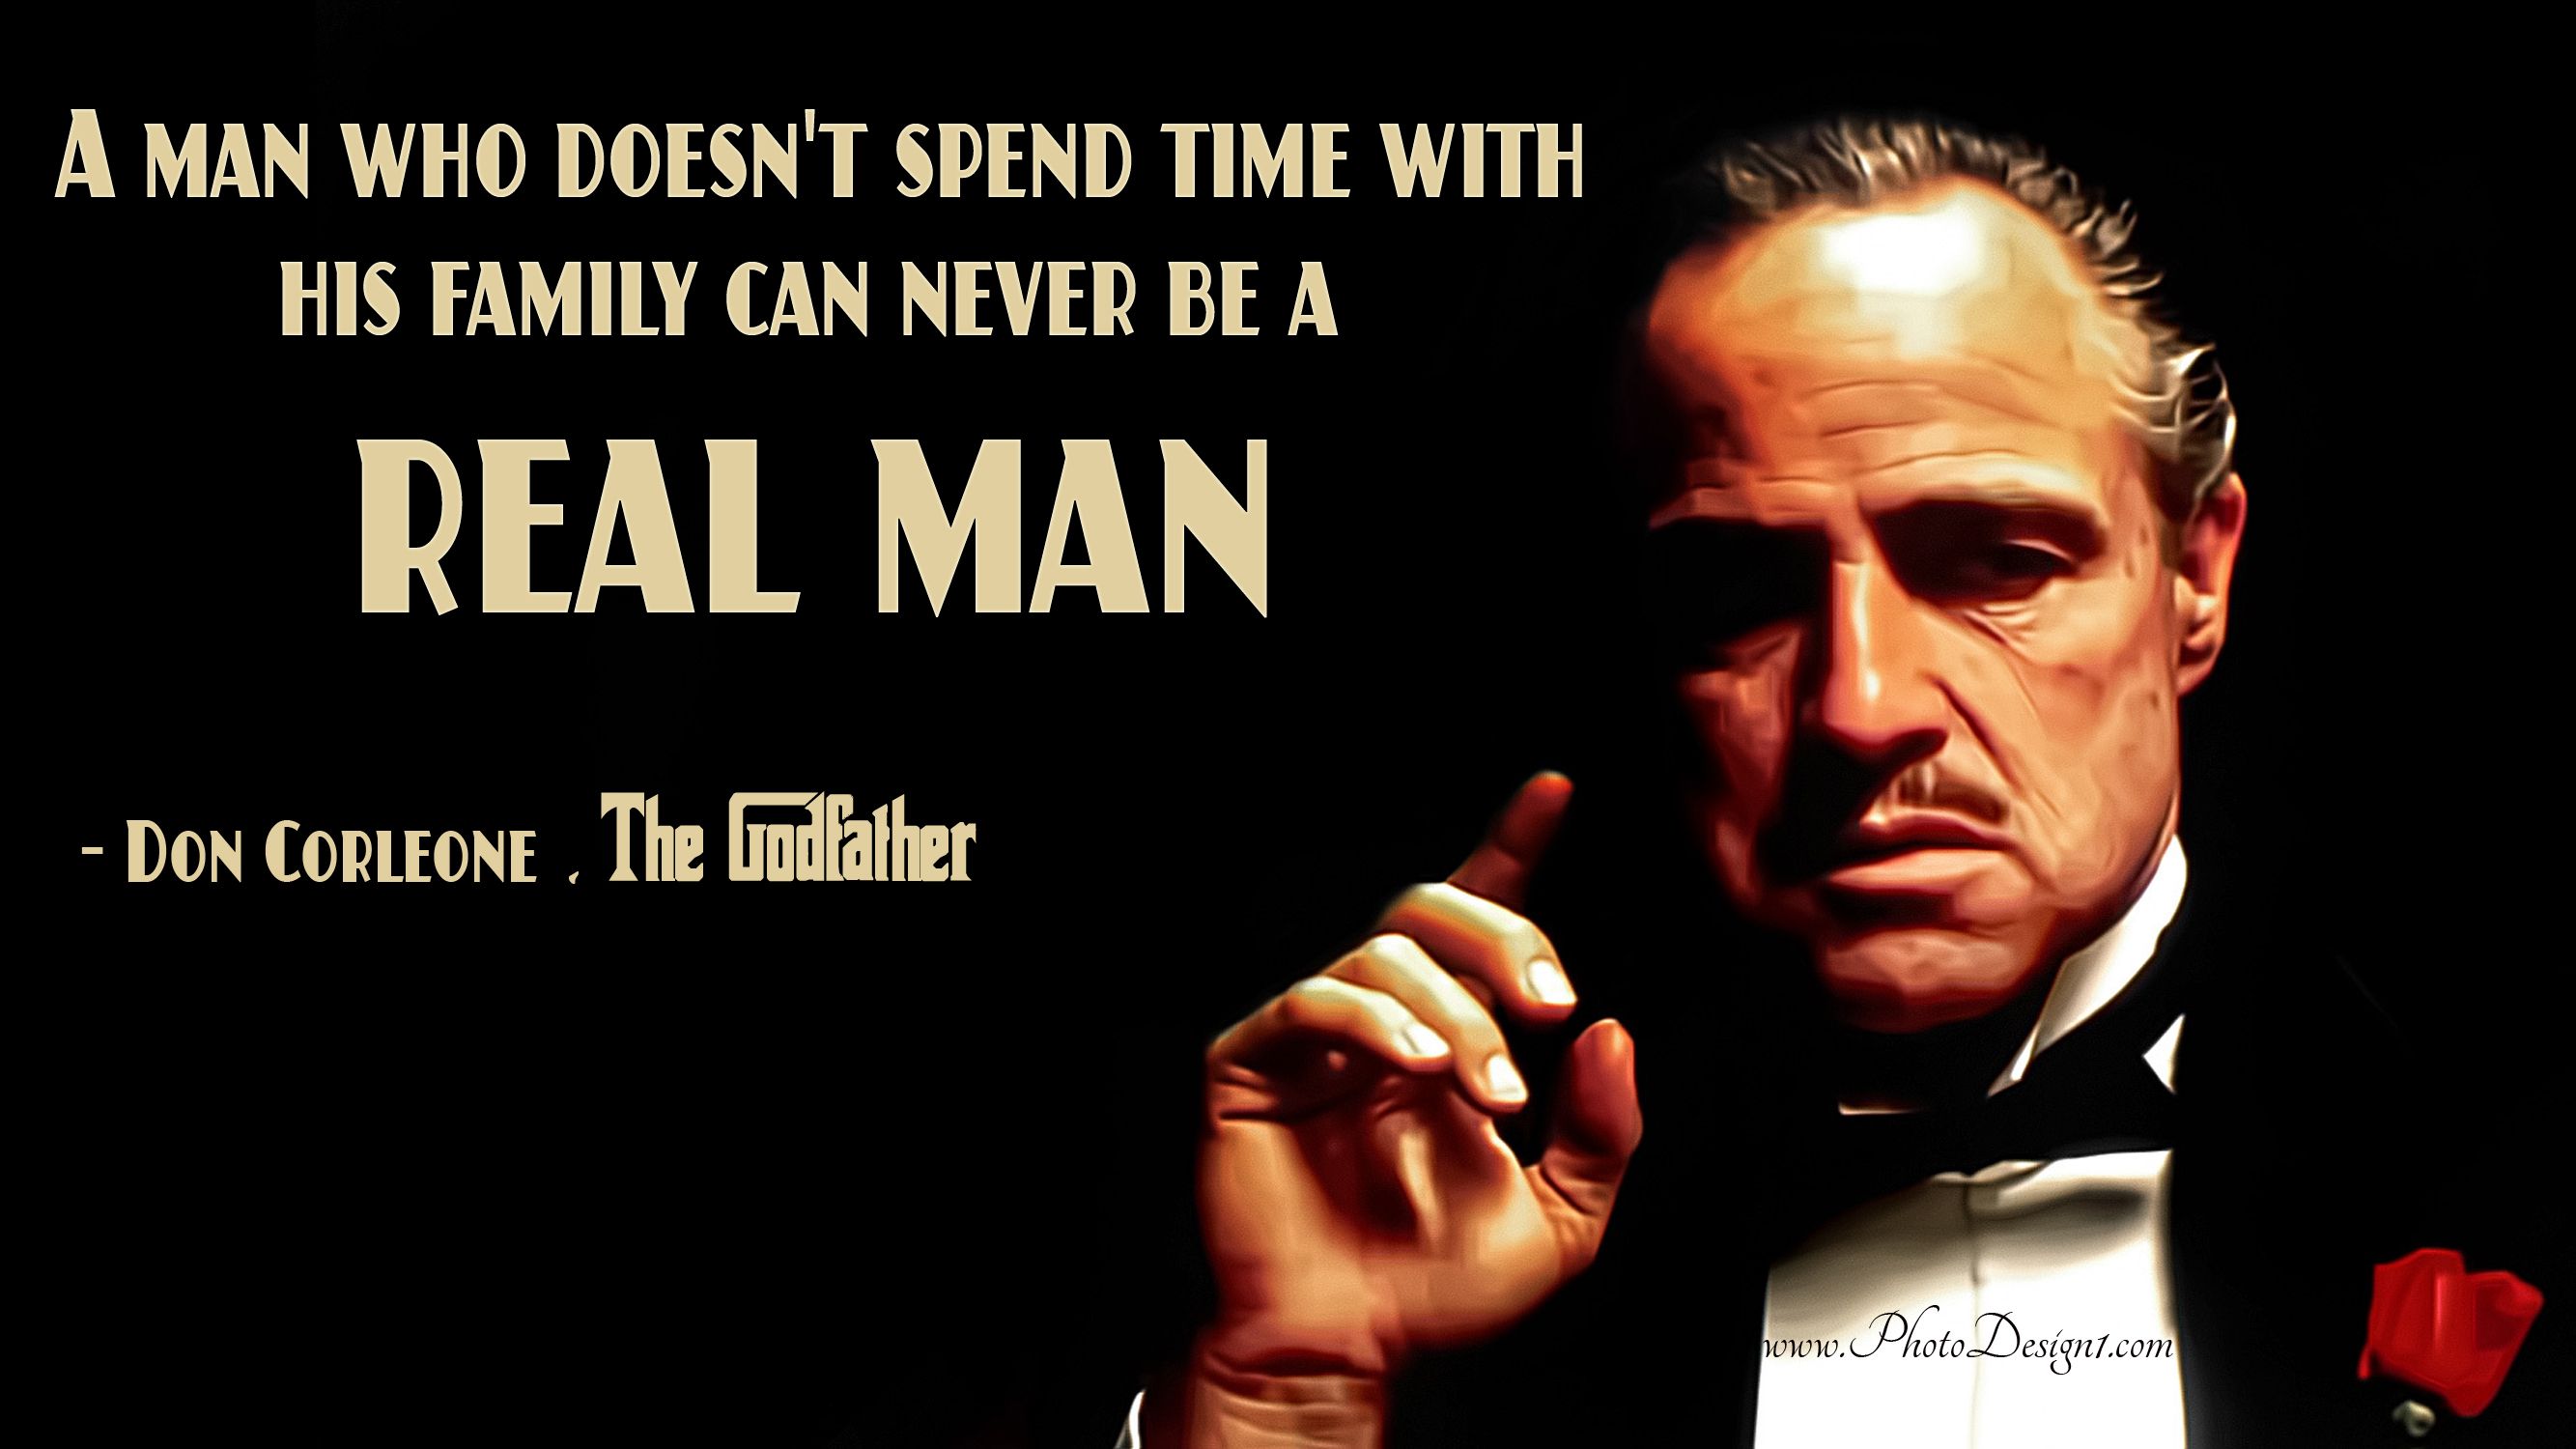 Don Vito Corleone Quote Wallpaper, PhotoDesign1. Godfather quotes, Vito corleone quotes, The godfather